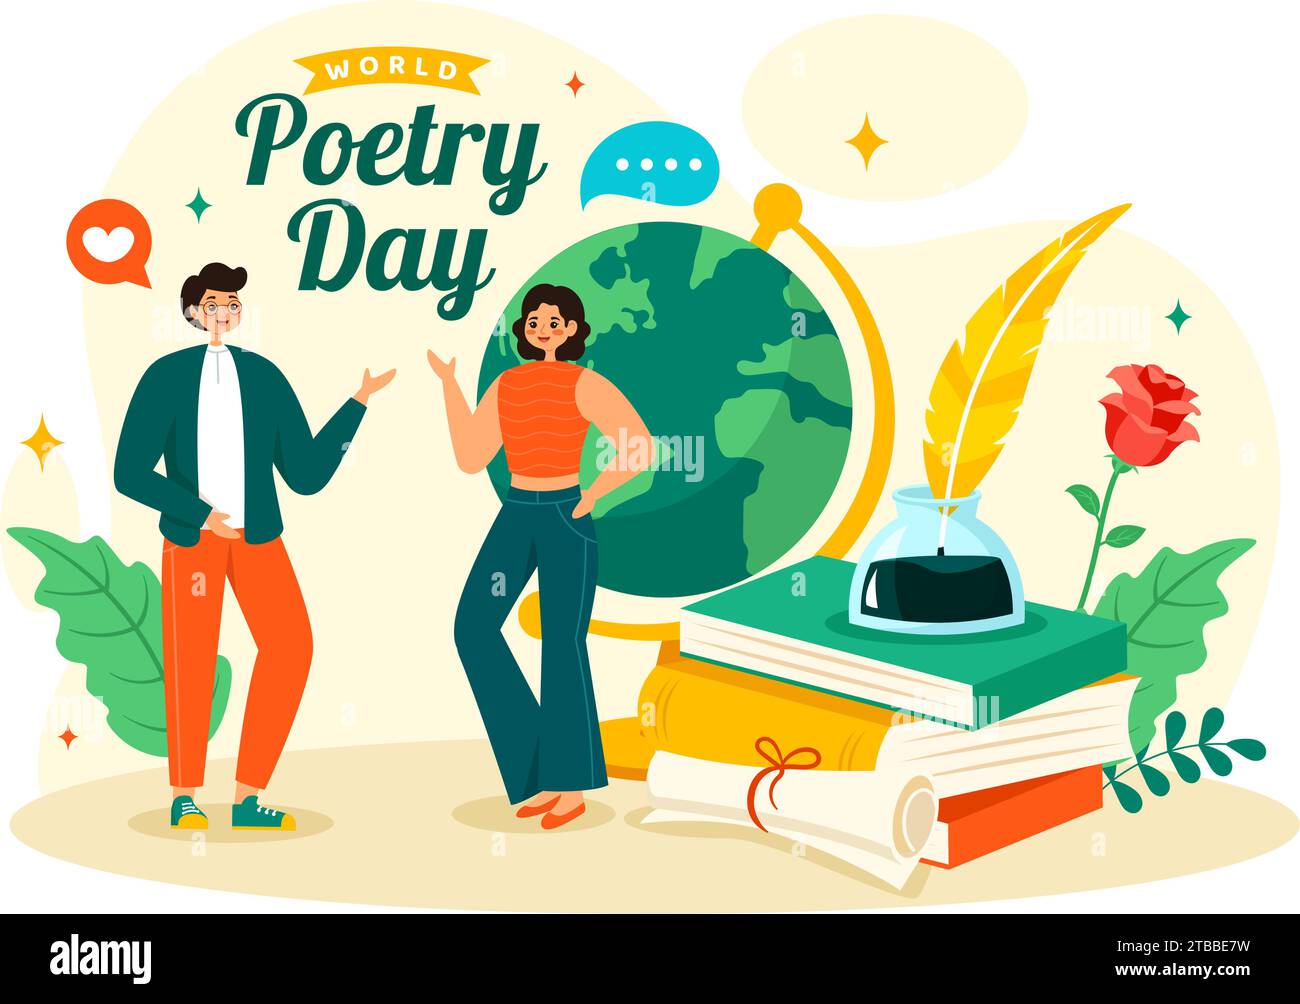 Illustrazione vettoriale della giornata mondiale della poesia il 21 marzo con un Quill, Ink, Paper, Typewriter e Book to Writing in Literature Flat Cartoon background Illustrazione Vettoriale